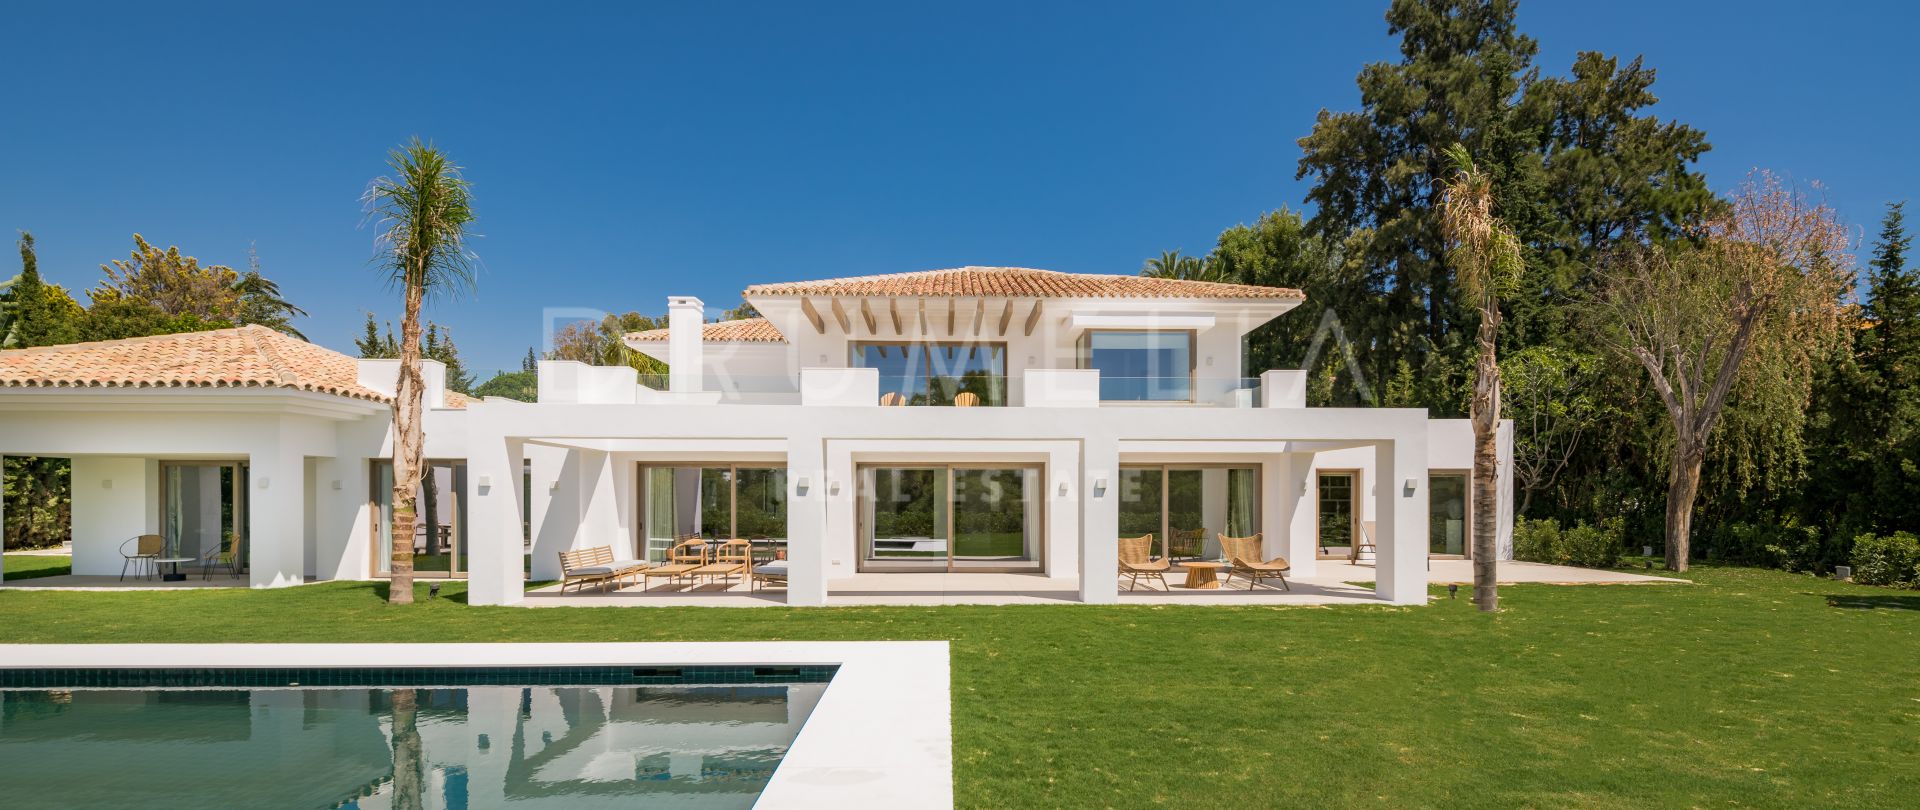 Impeccable villa design haut de gamme dans le magnifique quartier d'El Paraiso, à Estepona.